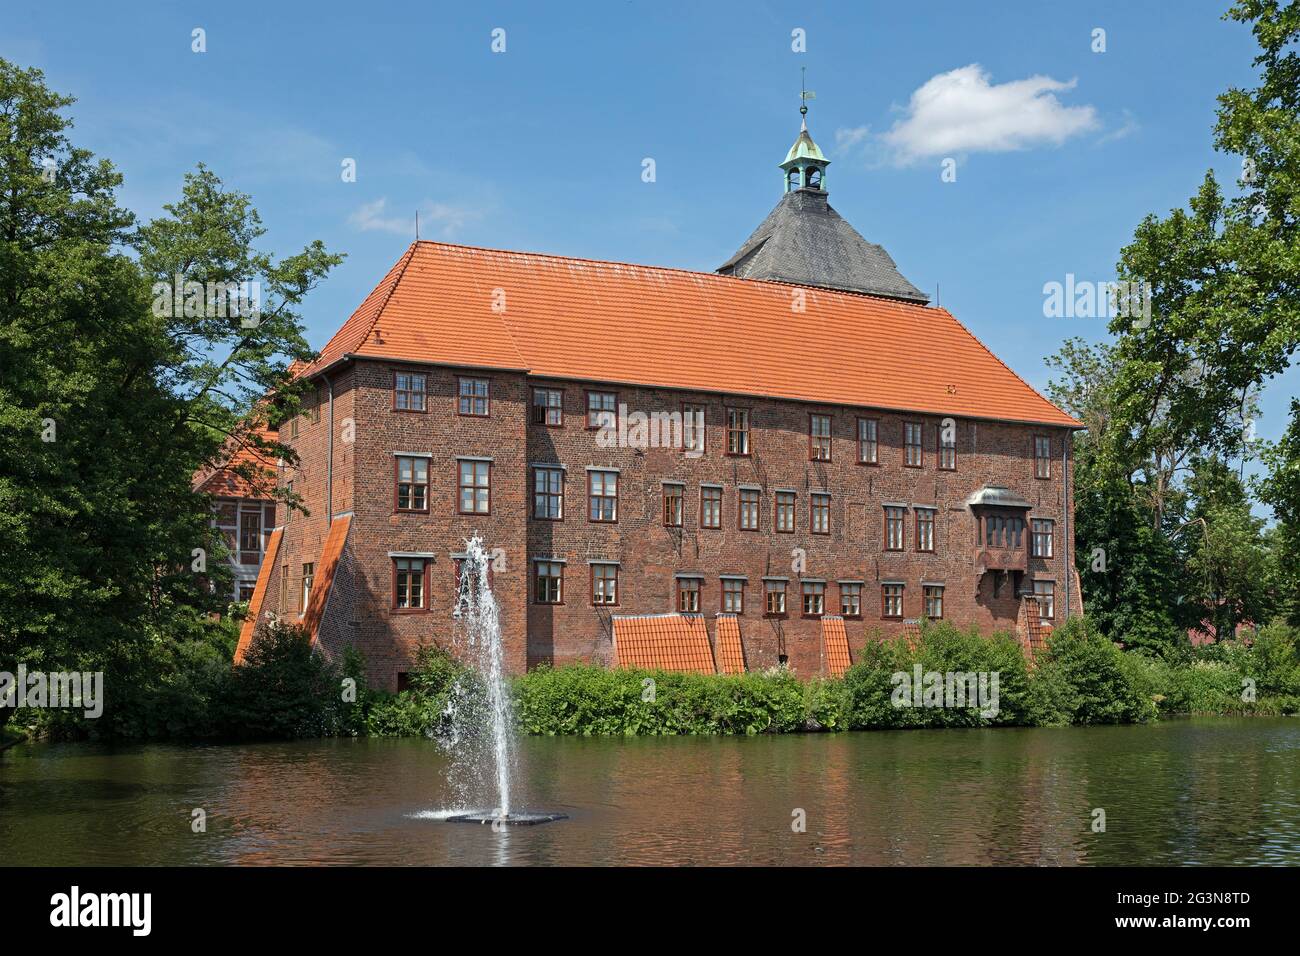 château, Winsen/Luhe, Basse-Saxe, Allemagne Banque D'Images